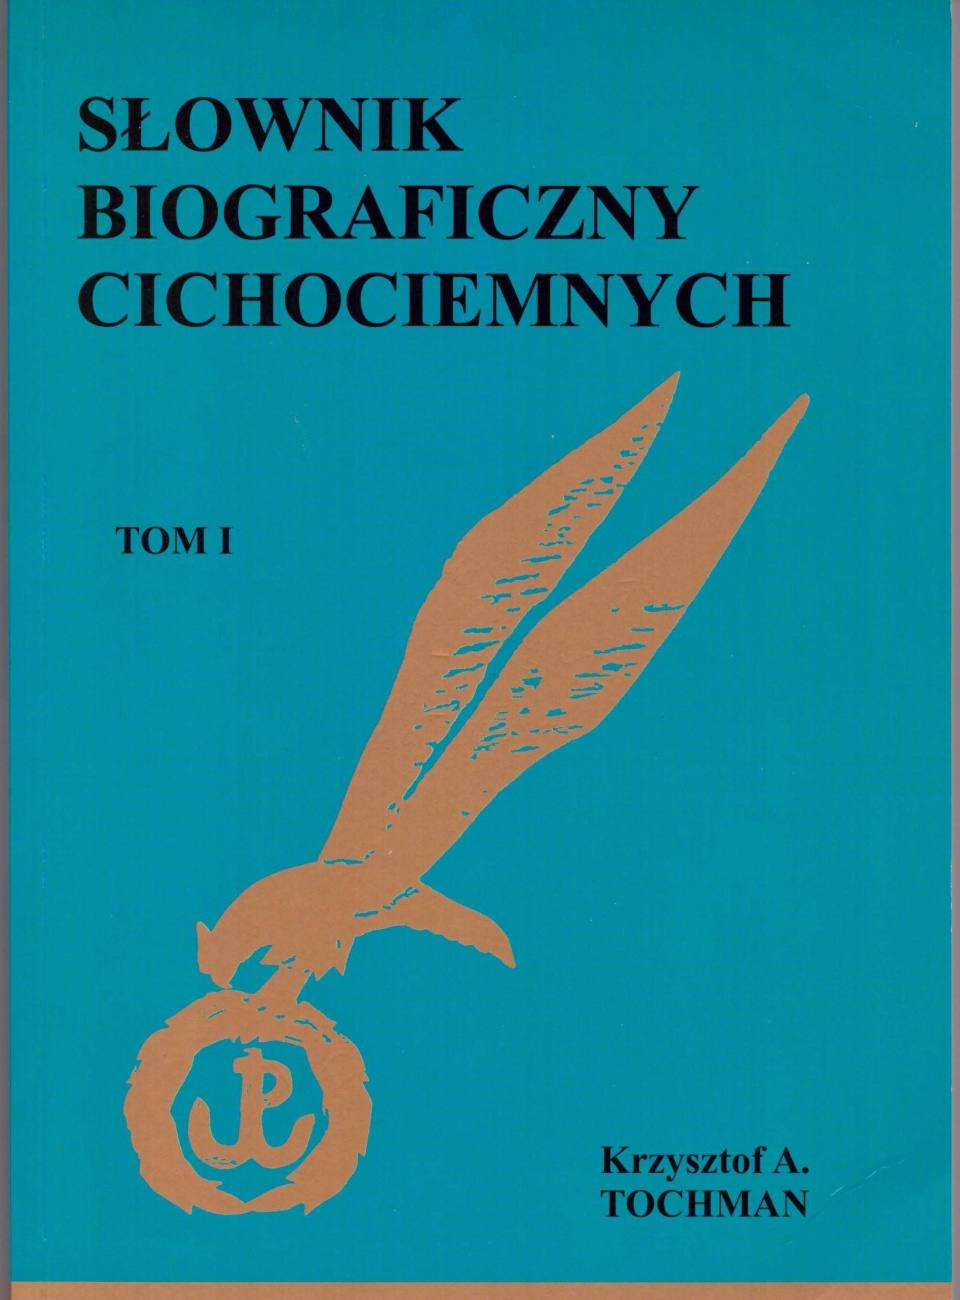 Okładka "Słownika biograficznego Cichociemnych" Krzysztofa A. Tochmana.